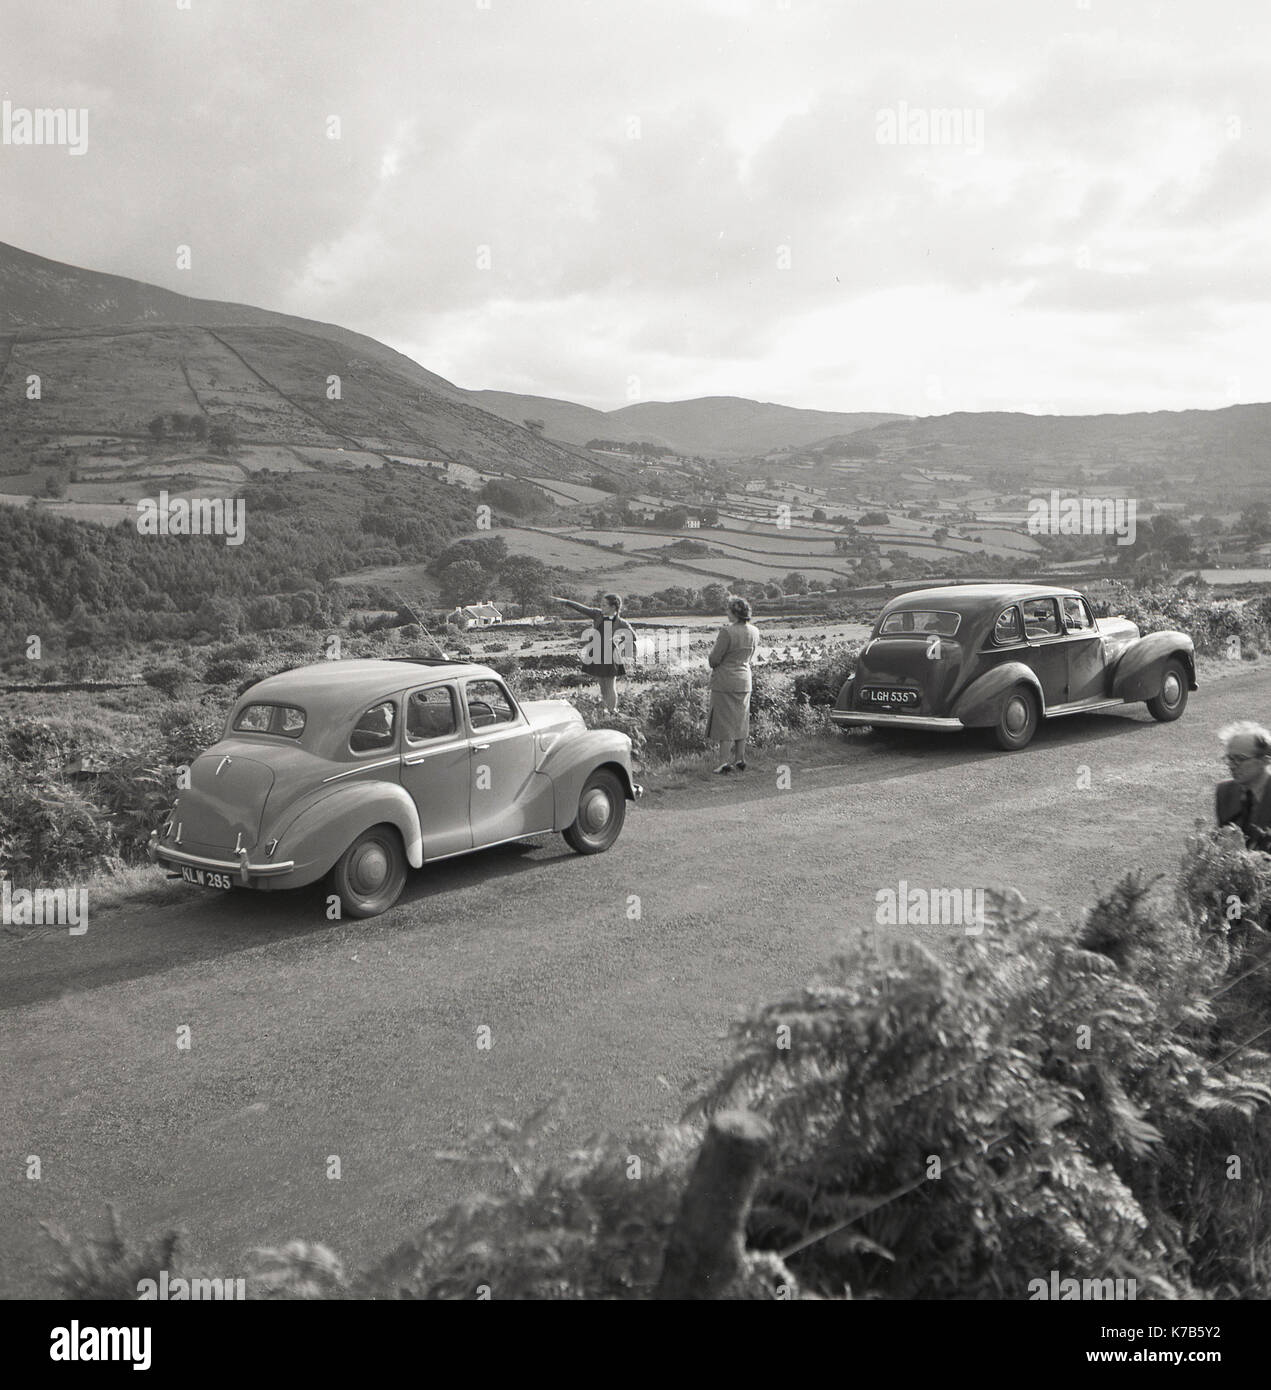 Années 1950, historique, en tournée en voiture en Irlande du Nord, une jeune fille debout sur une ruelle de campagne surplombant les montagnes de Morne pointant vers quelque chose dans la distance avec sa mère regardant. La voiture sur la gauche est une voiture britannique de l'Austn A40. Banque D'Images